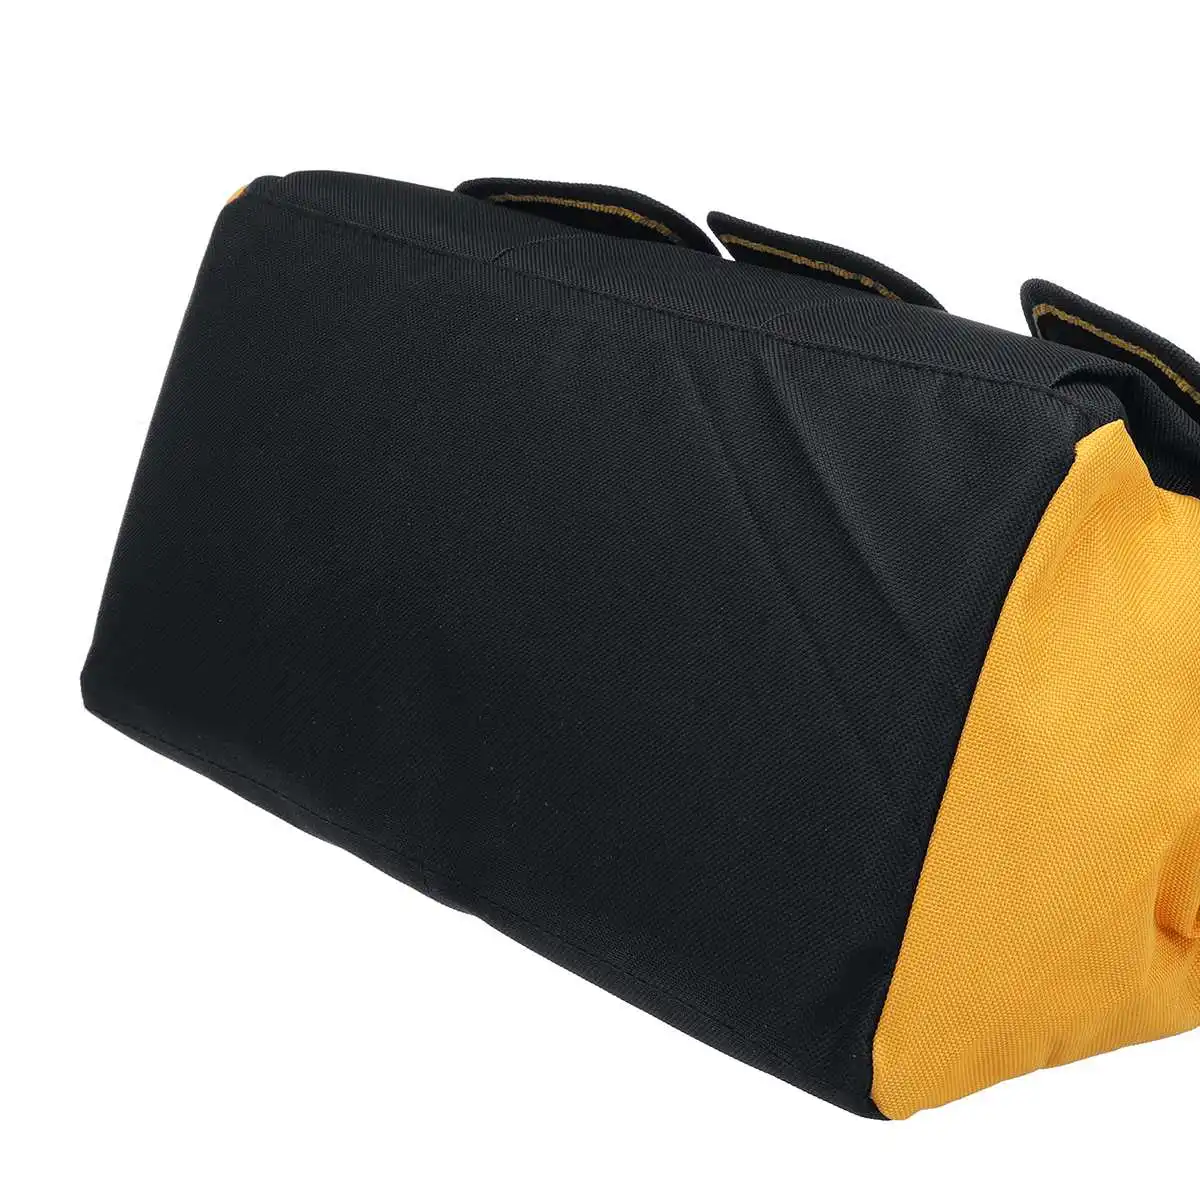 13 дюймов сумка для инструментов Ремонт Холст Большая оксфордская сумка через плечо чехол Портативная сумка для электрика отвертки дрель Qrench сумка на молнии комплект